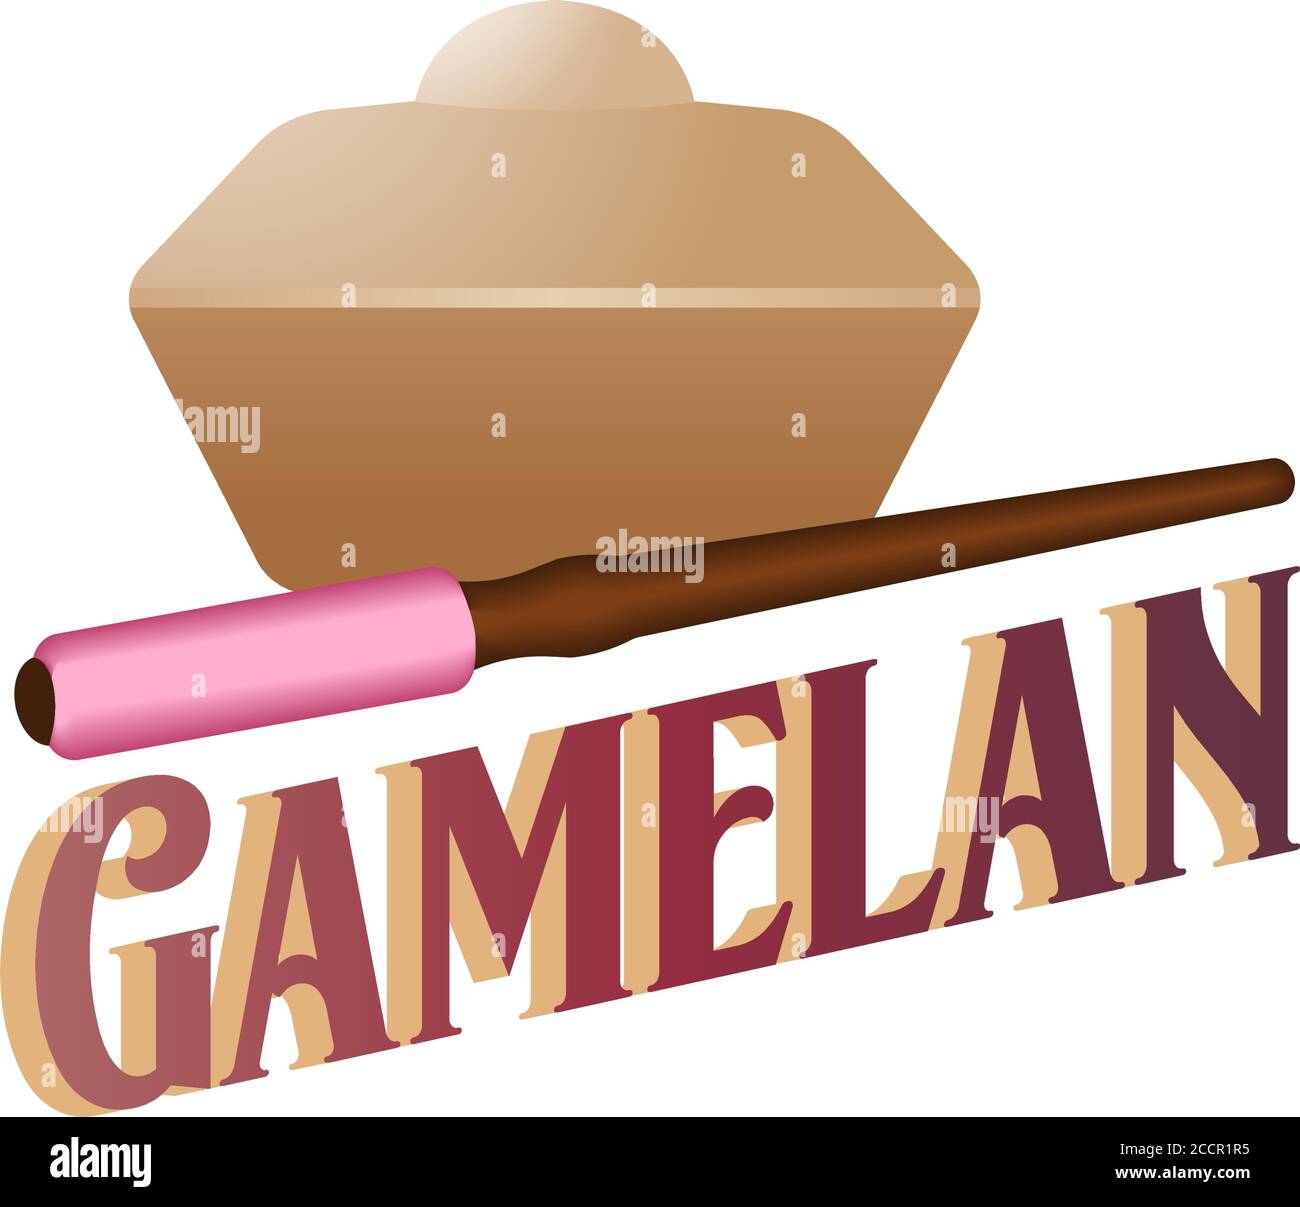 Gamelan-Logo. Gamelan ist die traditionelle Ensemblemusik der Javaner, Sundanesen und Balinesen Indonesiens, die überwiegend aus Percus besteht Stock Vektor